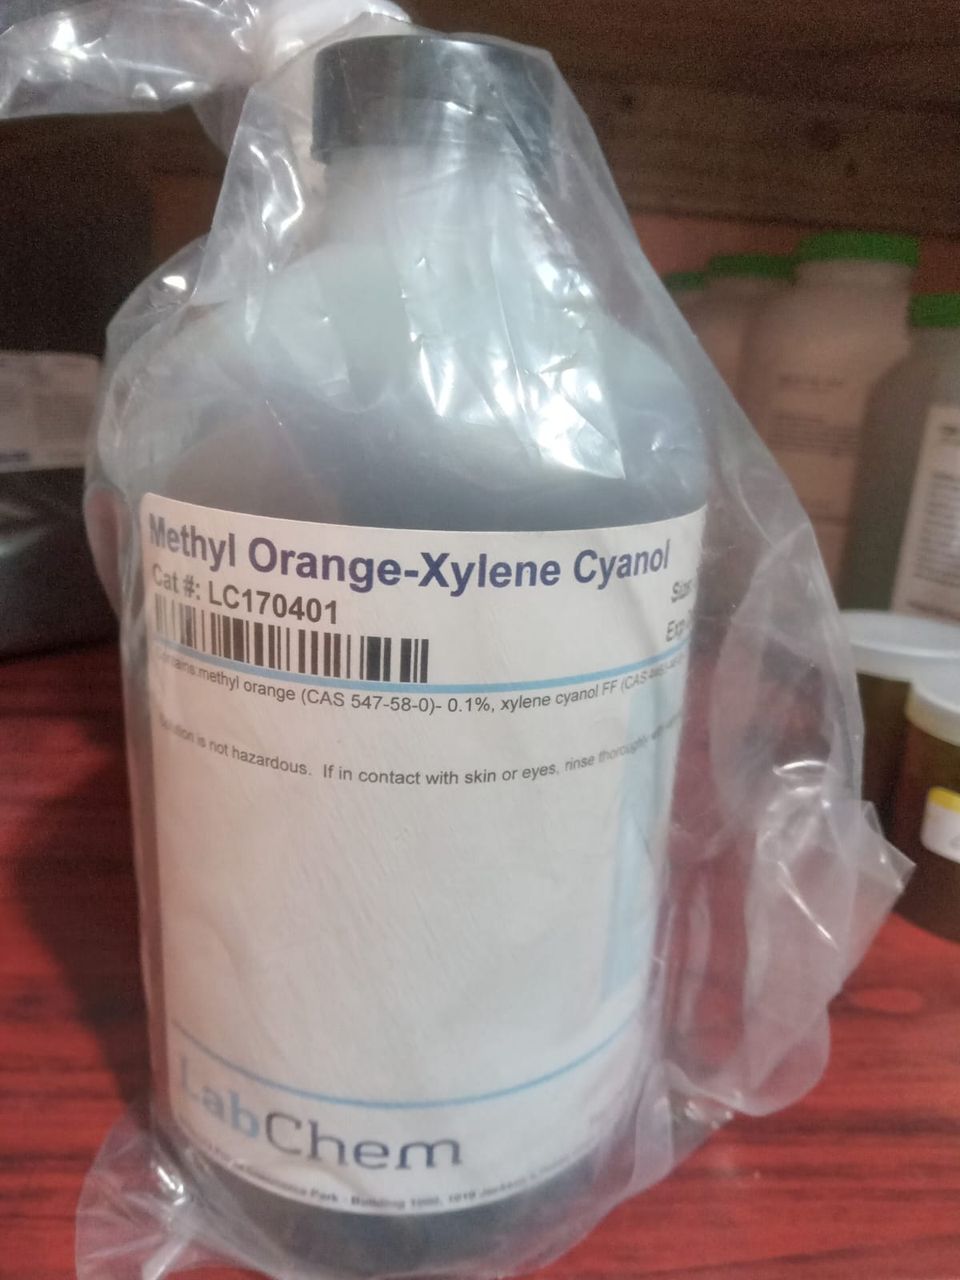 Methly orange xylene cyanol